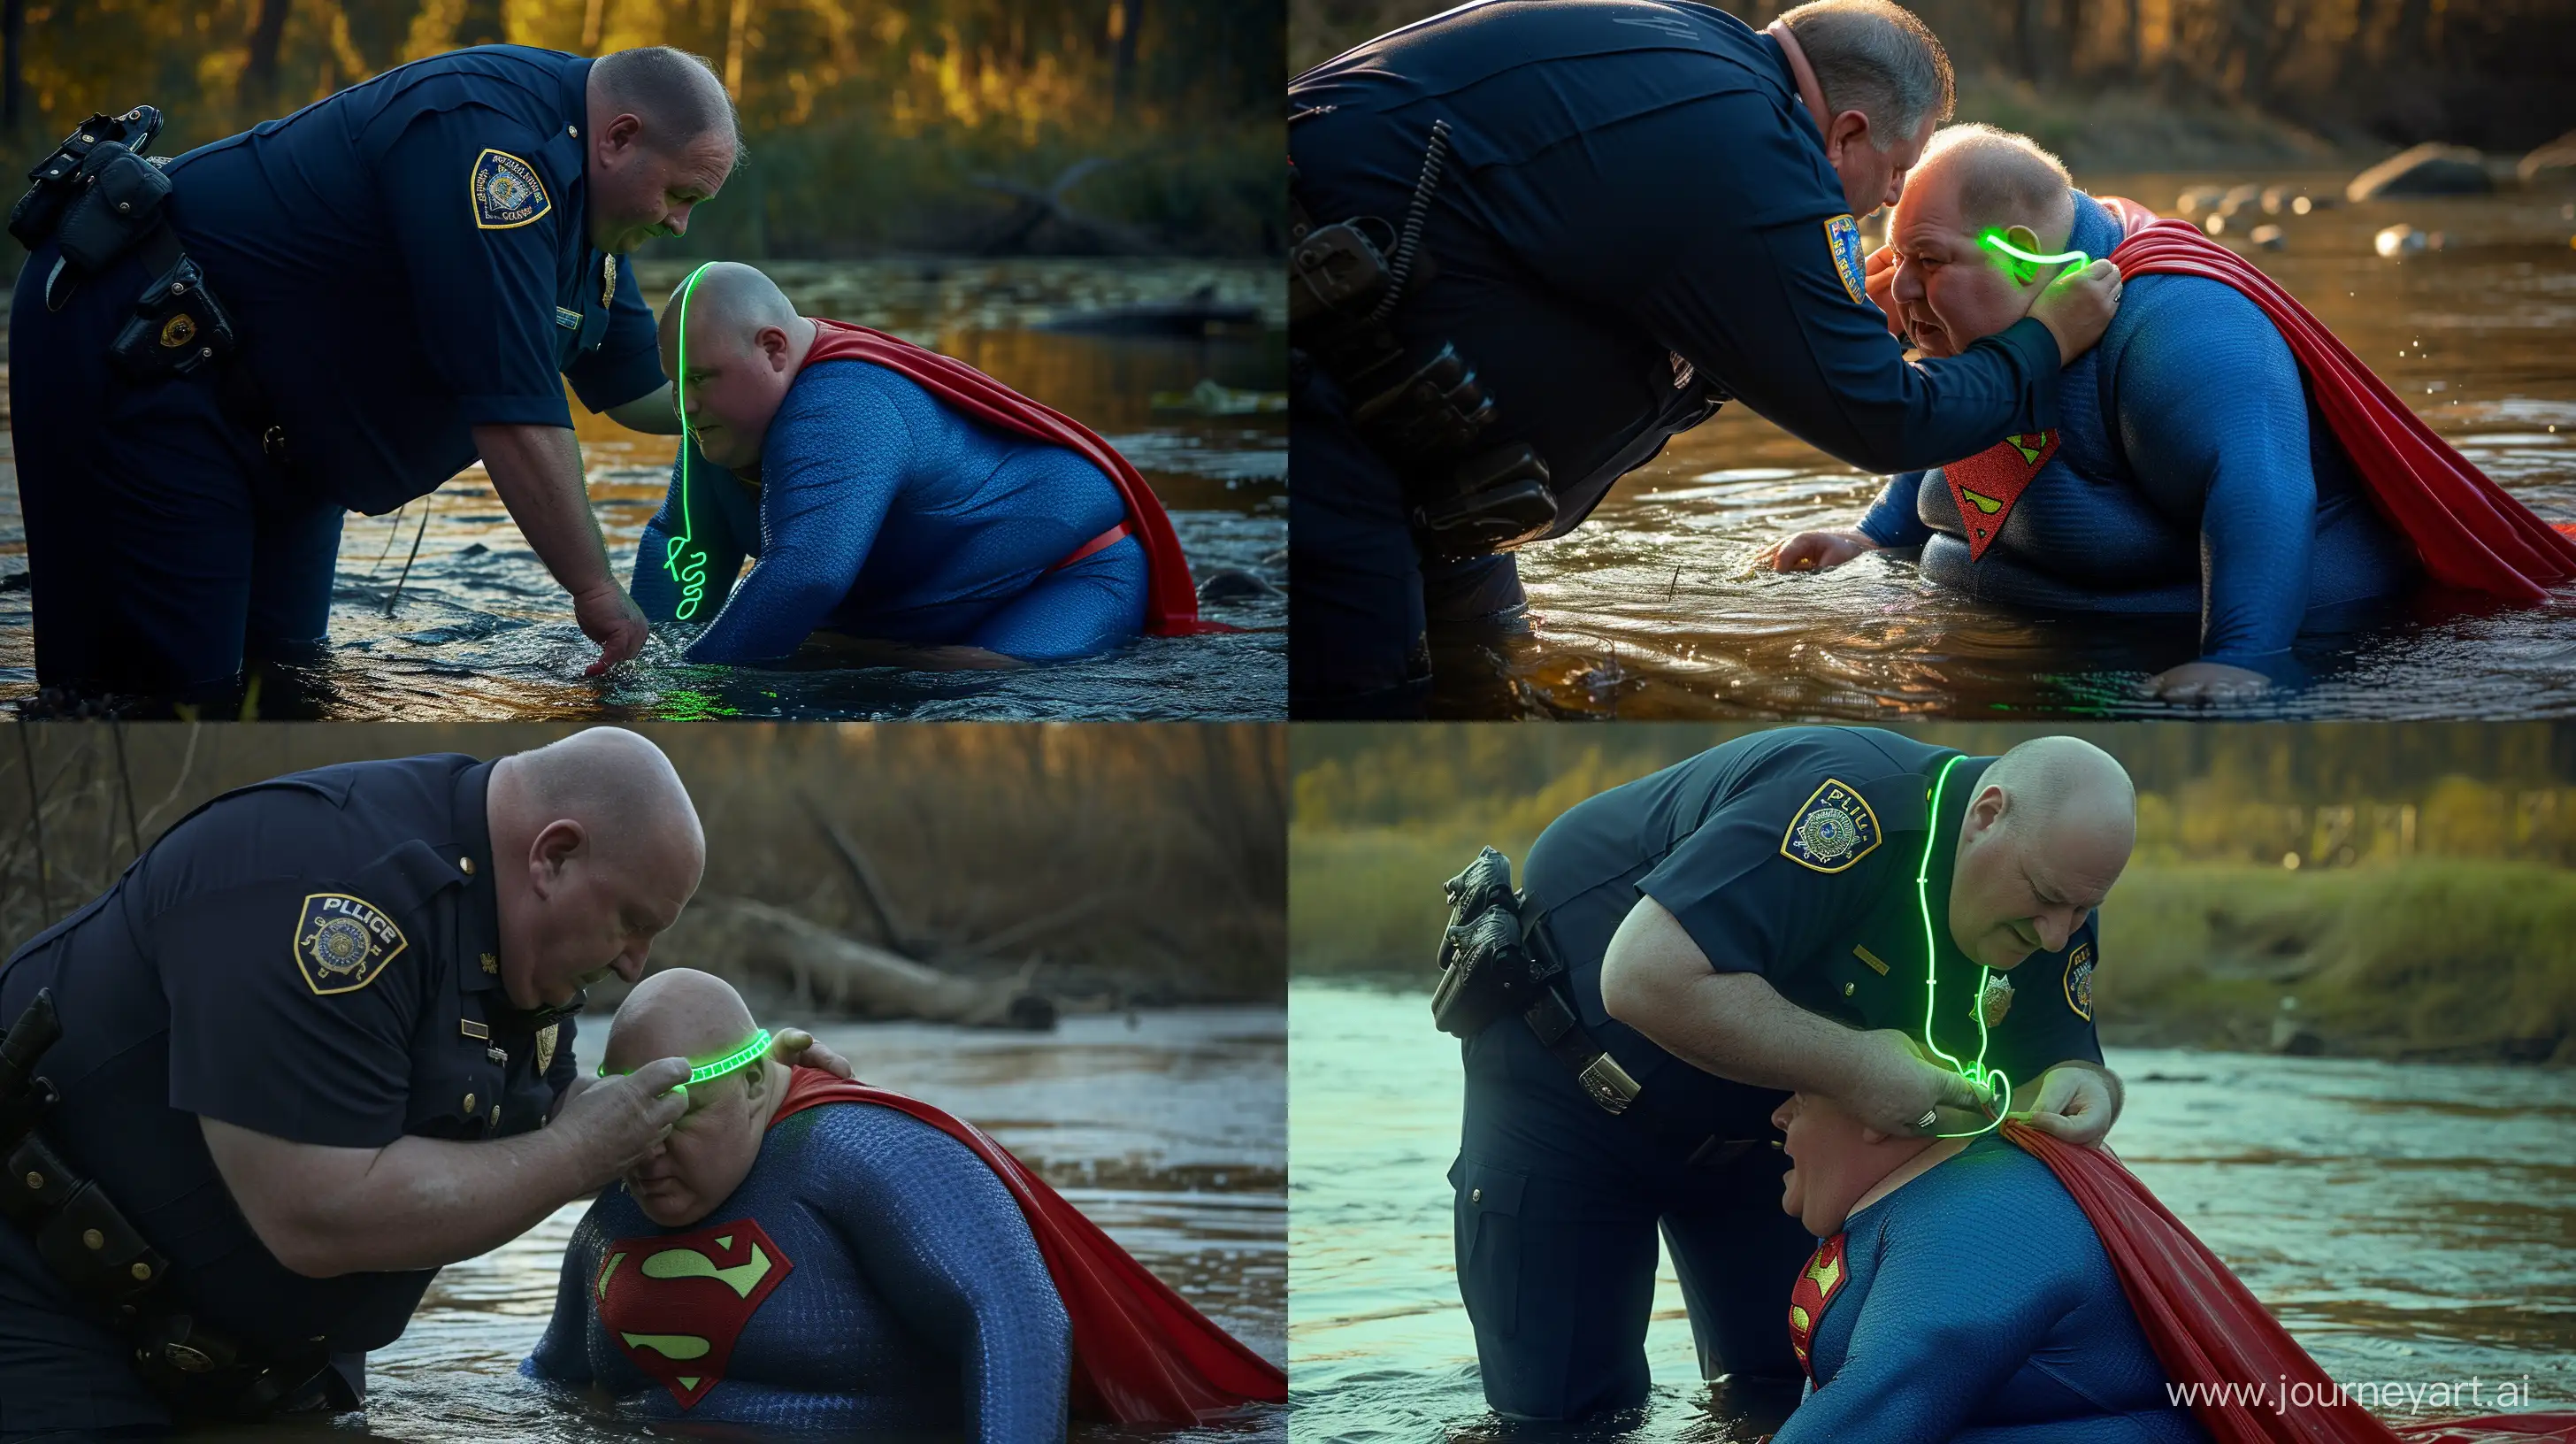 Eccentric-Scene-Senior-Superman-in-Neon-Collar-by-the-River